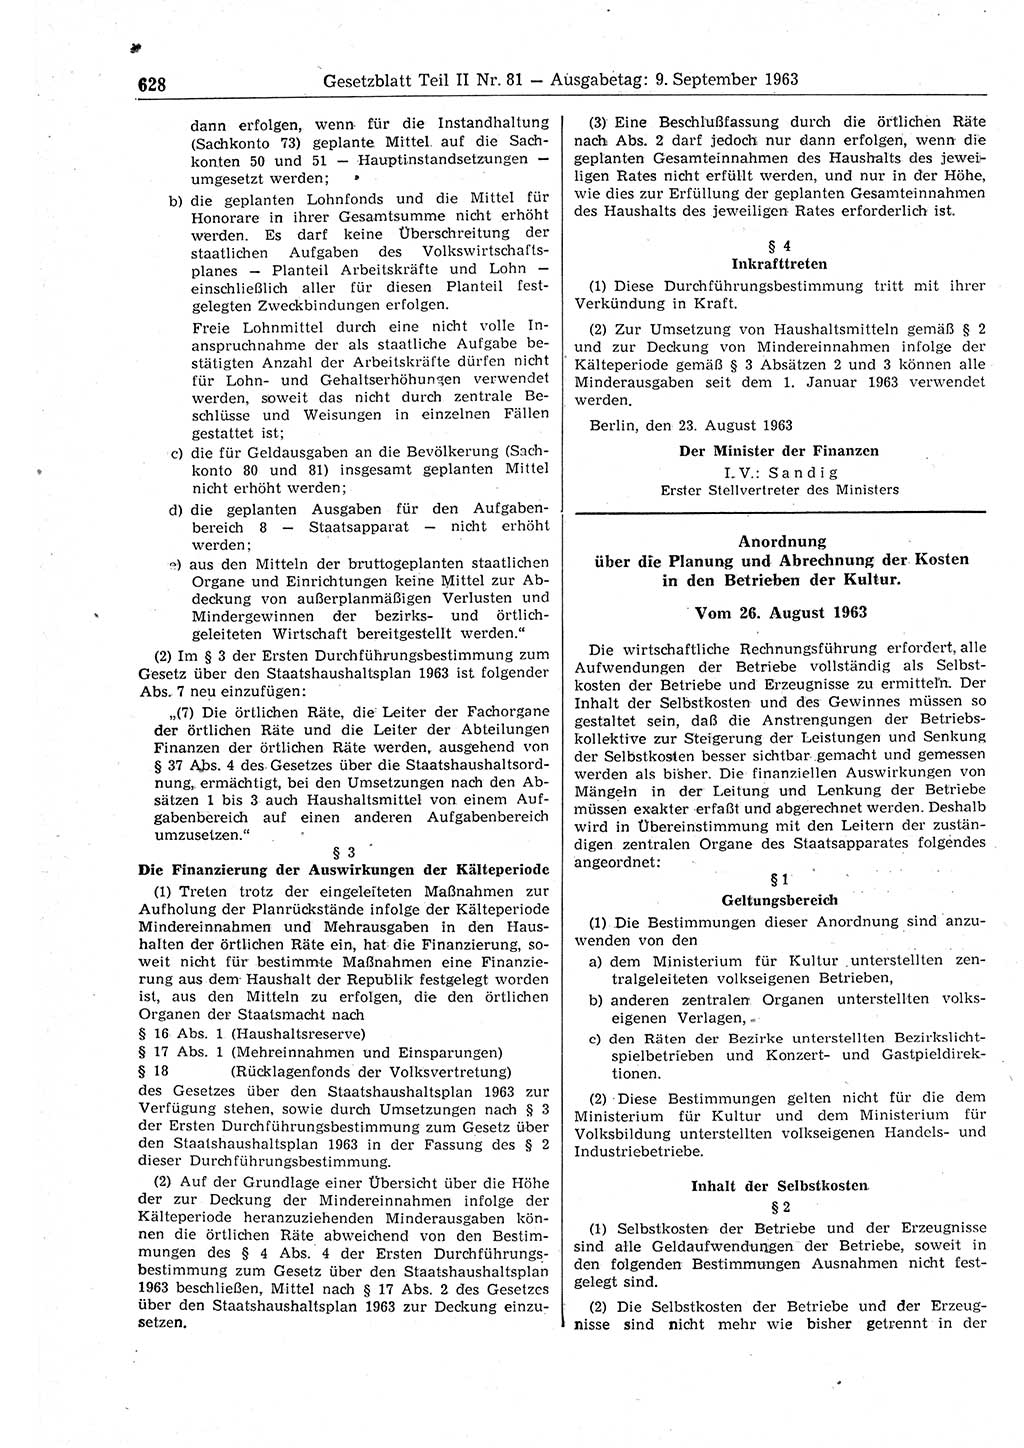 Gesetzblatt (GBl.) der Deutschen Demokratischen Republik (DDR) Teil ⅠⅠ 1963, Seite 628 (GBl. DDR ⅠⅠ 1963, S. 628)